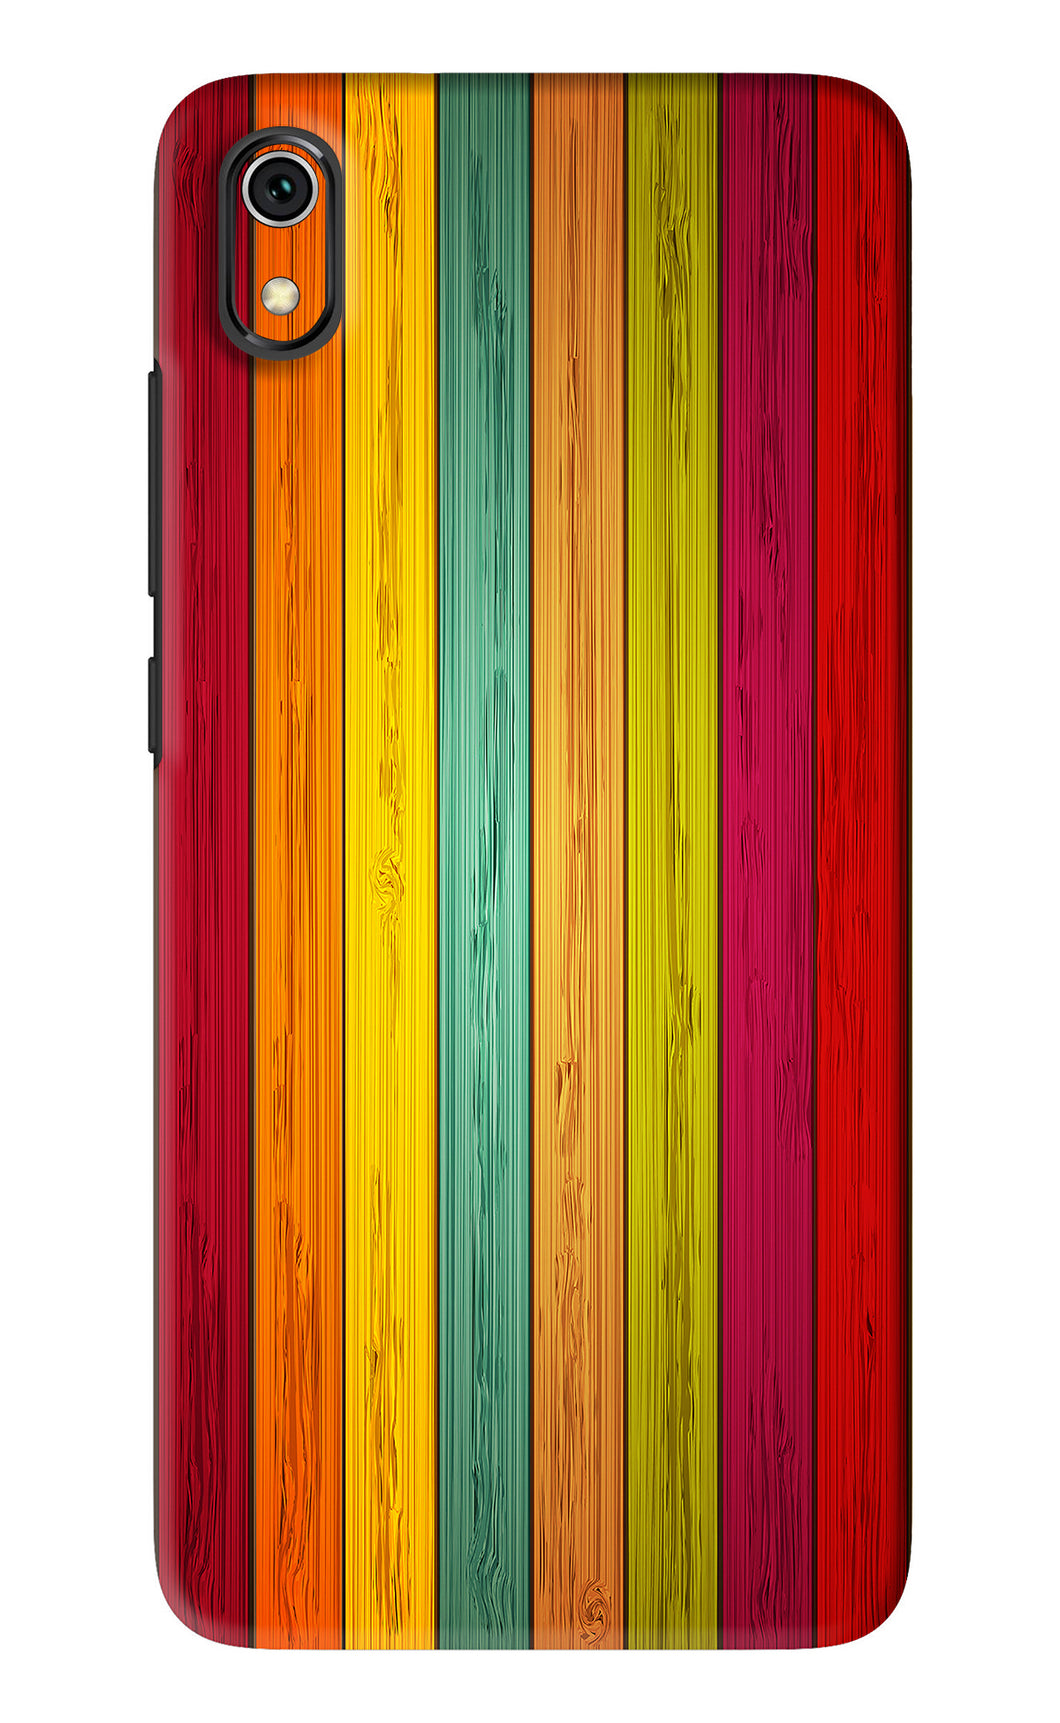 Multicolor Wooden Xiaomi Redmi 7A Back Skin Wrap